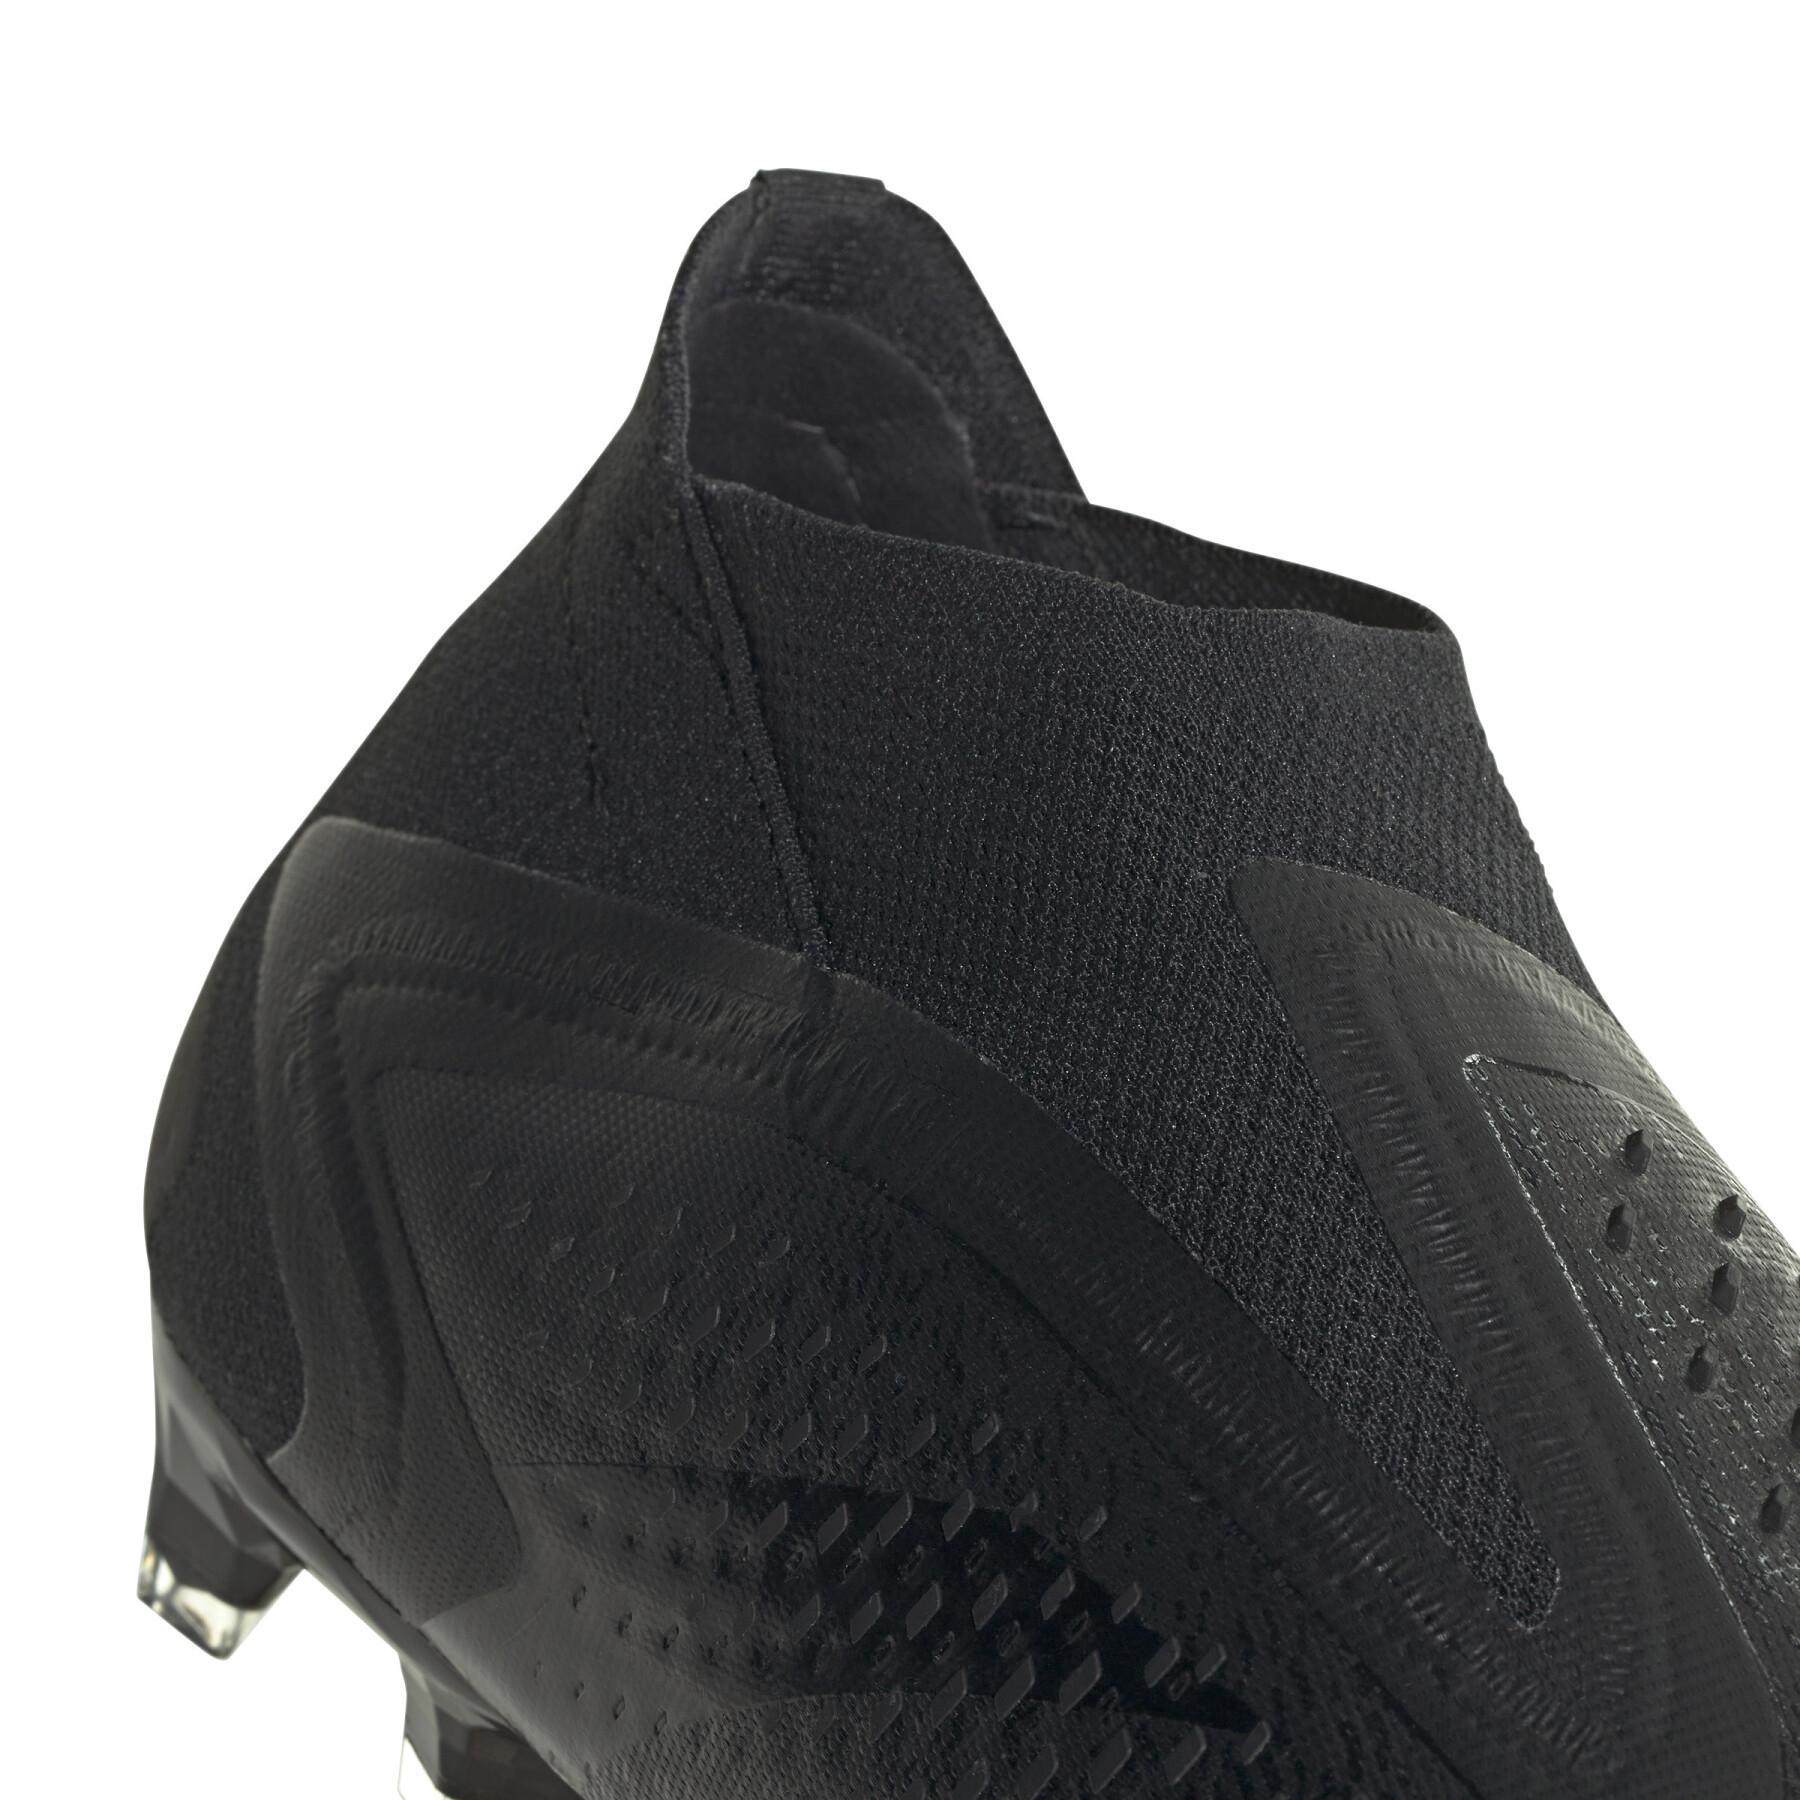 Sapatos de futebol para crianças adidas Predator Accuracy+ FG - Nightstrike Pack